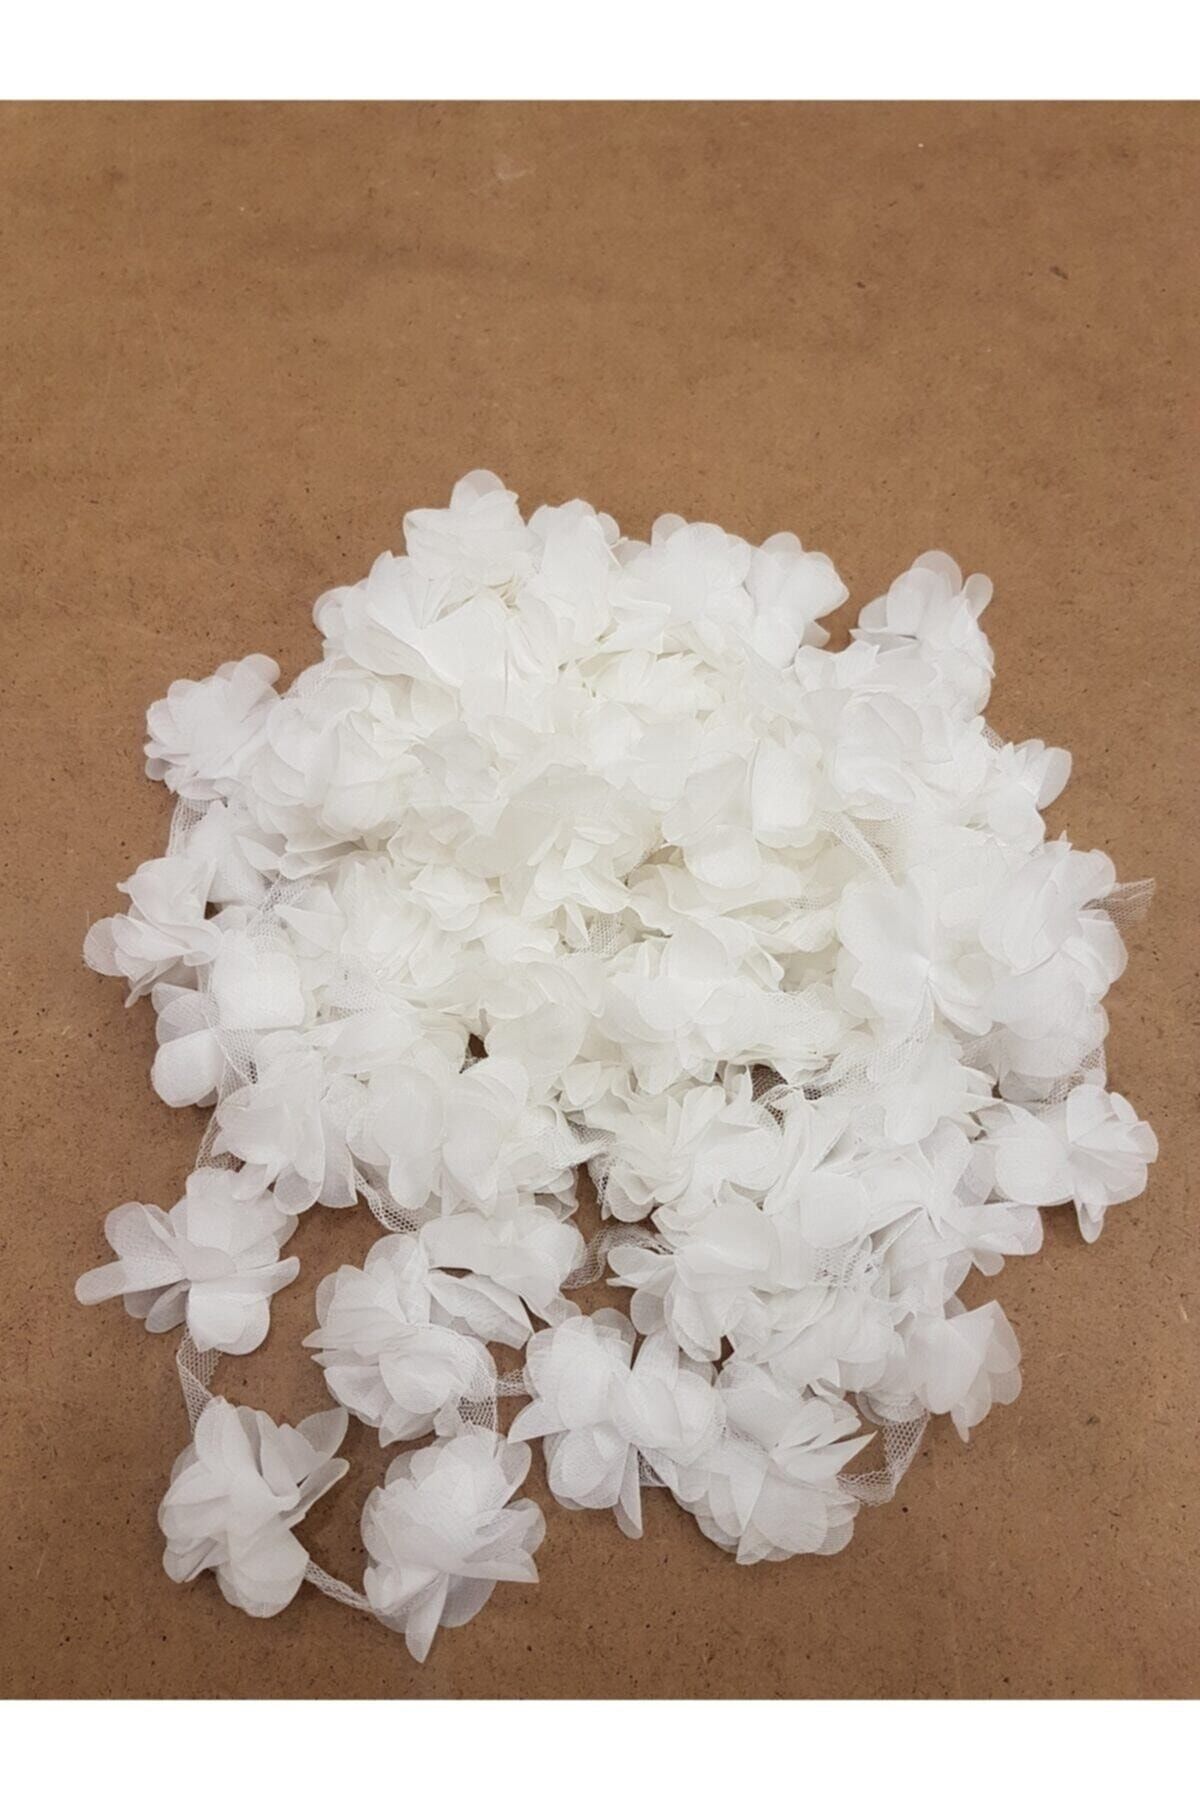 Aker Hediyelik Beyaz Lazer Kesim Gül Süsleme Paketleme Malzemesi  Organze Kumaş Yapay Çiçekler 3m 36 Adet